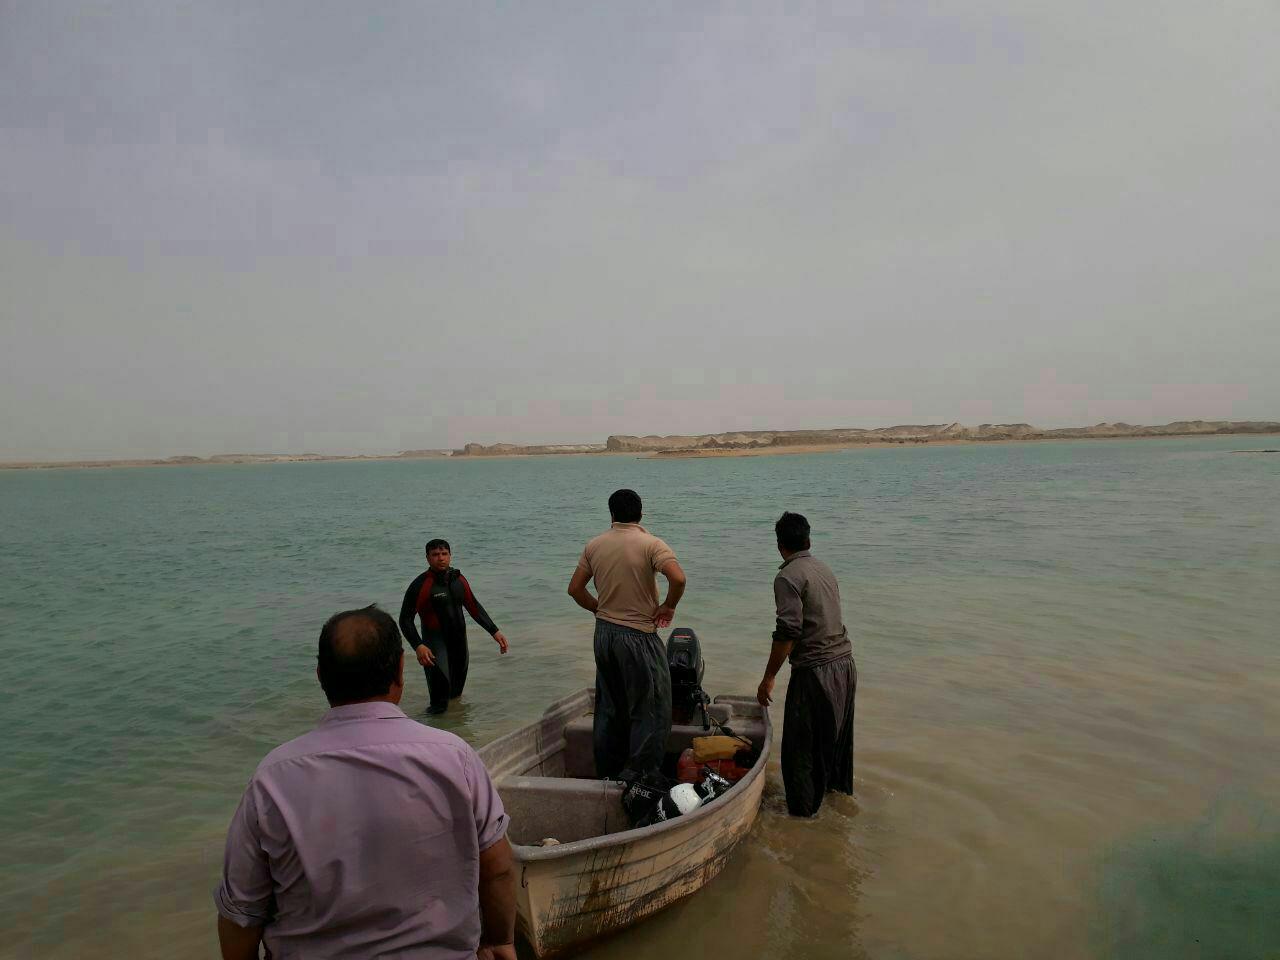 جوان ۳۴ساله در رودخانه دز غرق شد